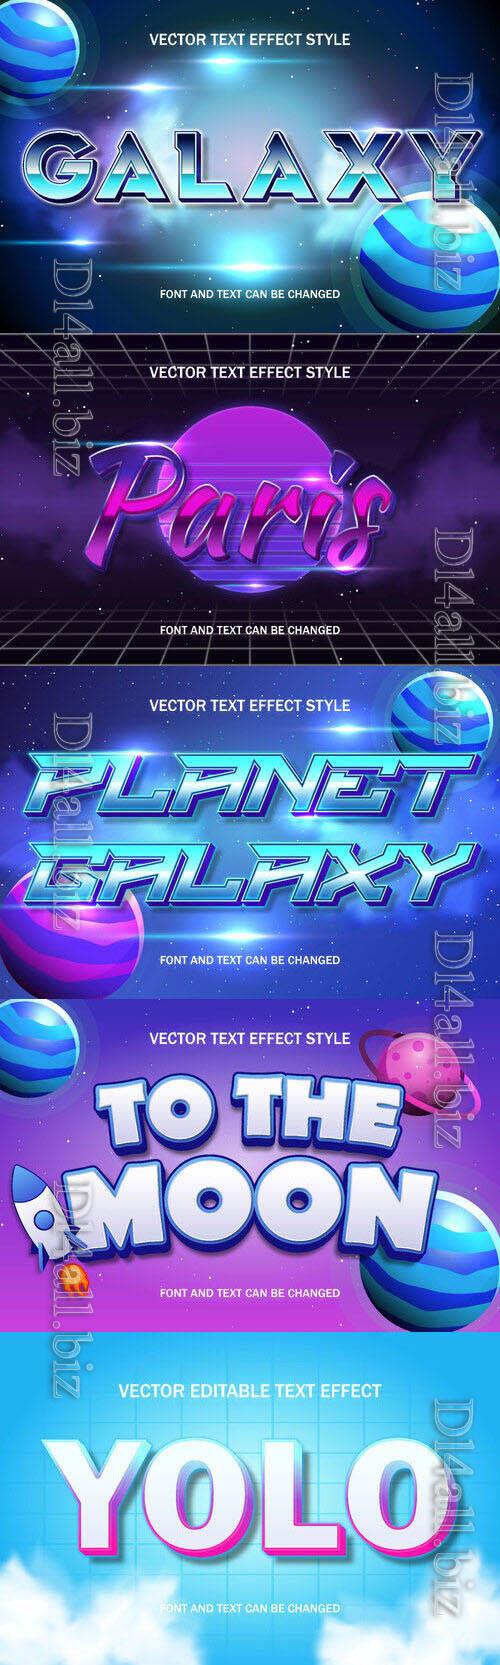 Vector 3d text editable, text effect font design  set vol 86